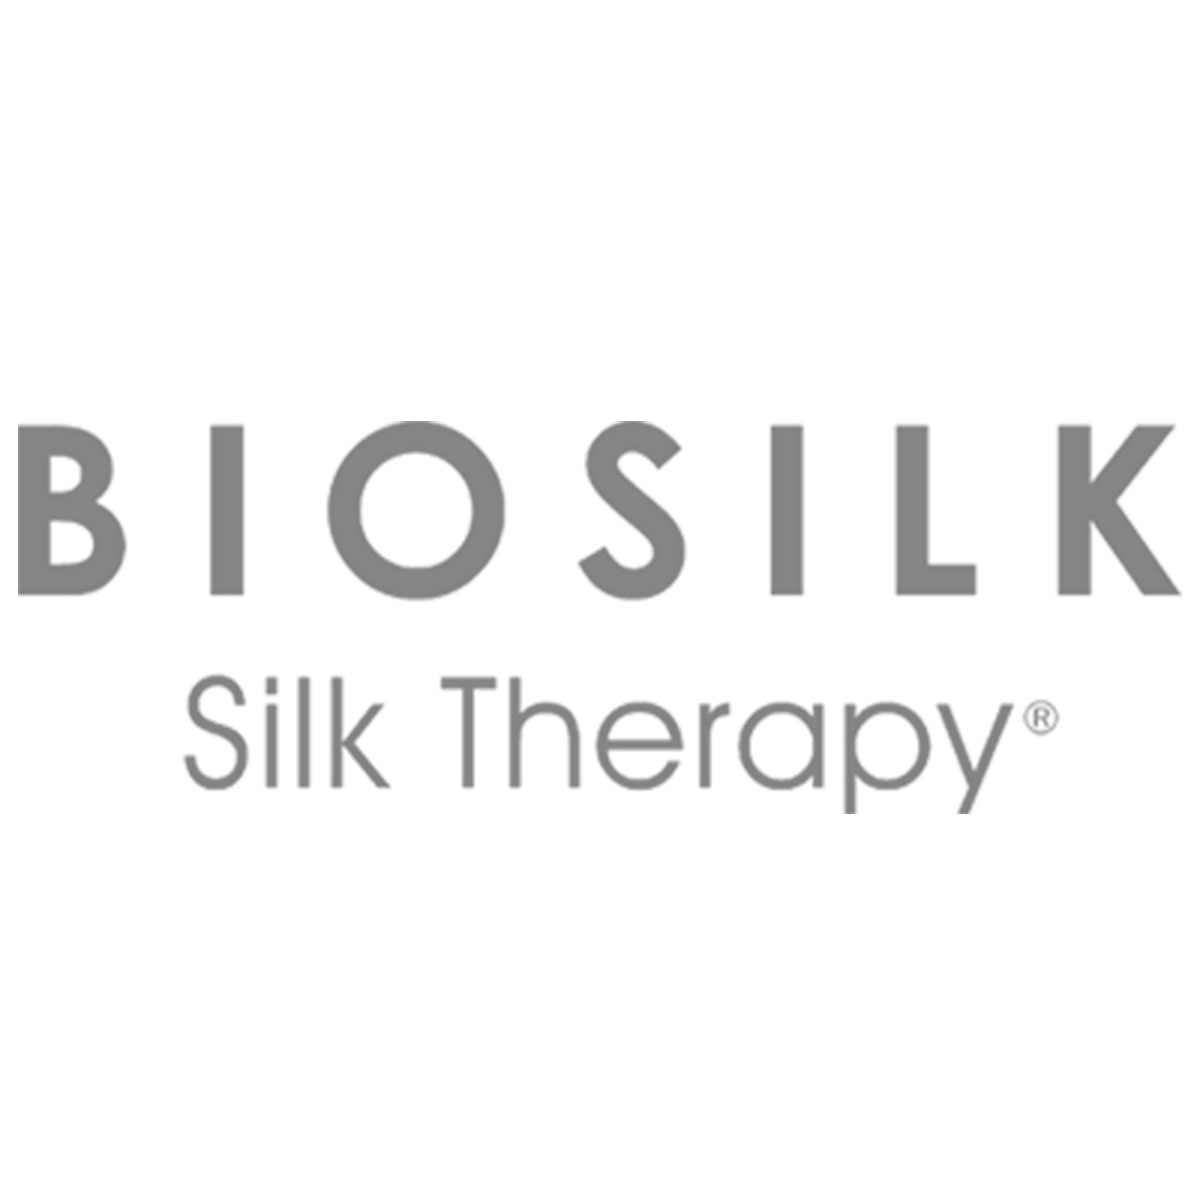 护发品牌Biosilk强势来袭～超过1500家的美发沙龙使用，可满足各种头发需求！基于丝蛋白开发产品，让头发四处般柔顺！